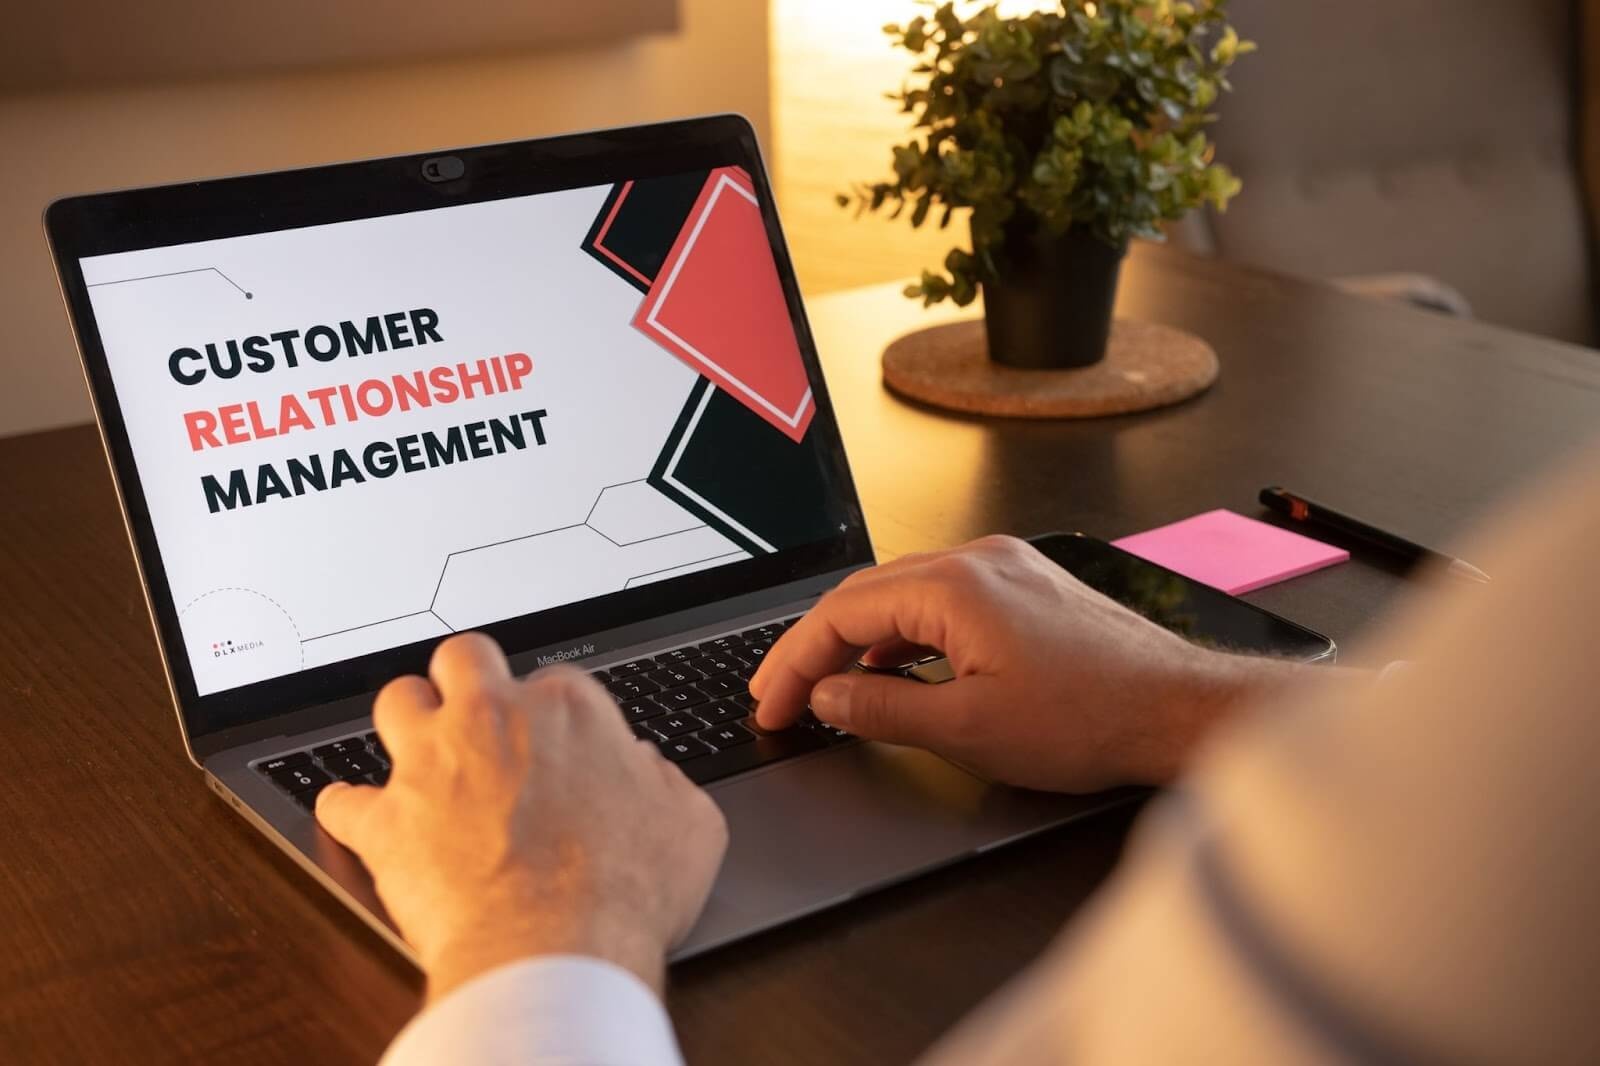 Laptop mit Customer Relations Management auf dem Bildschirm